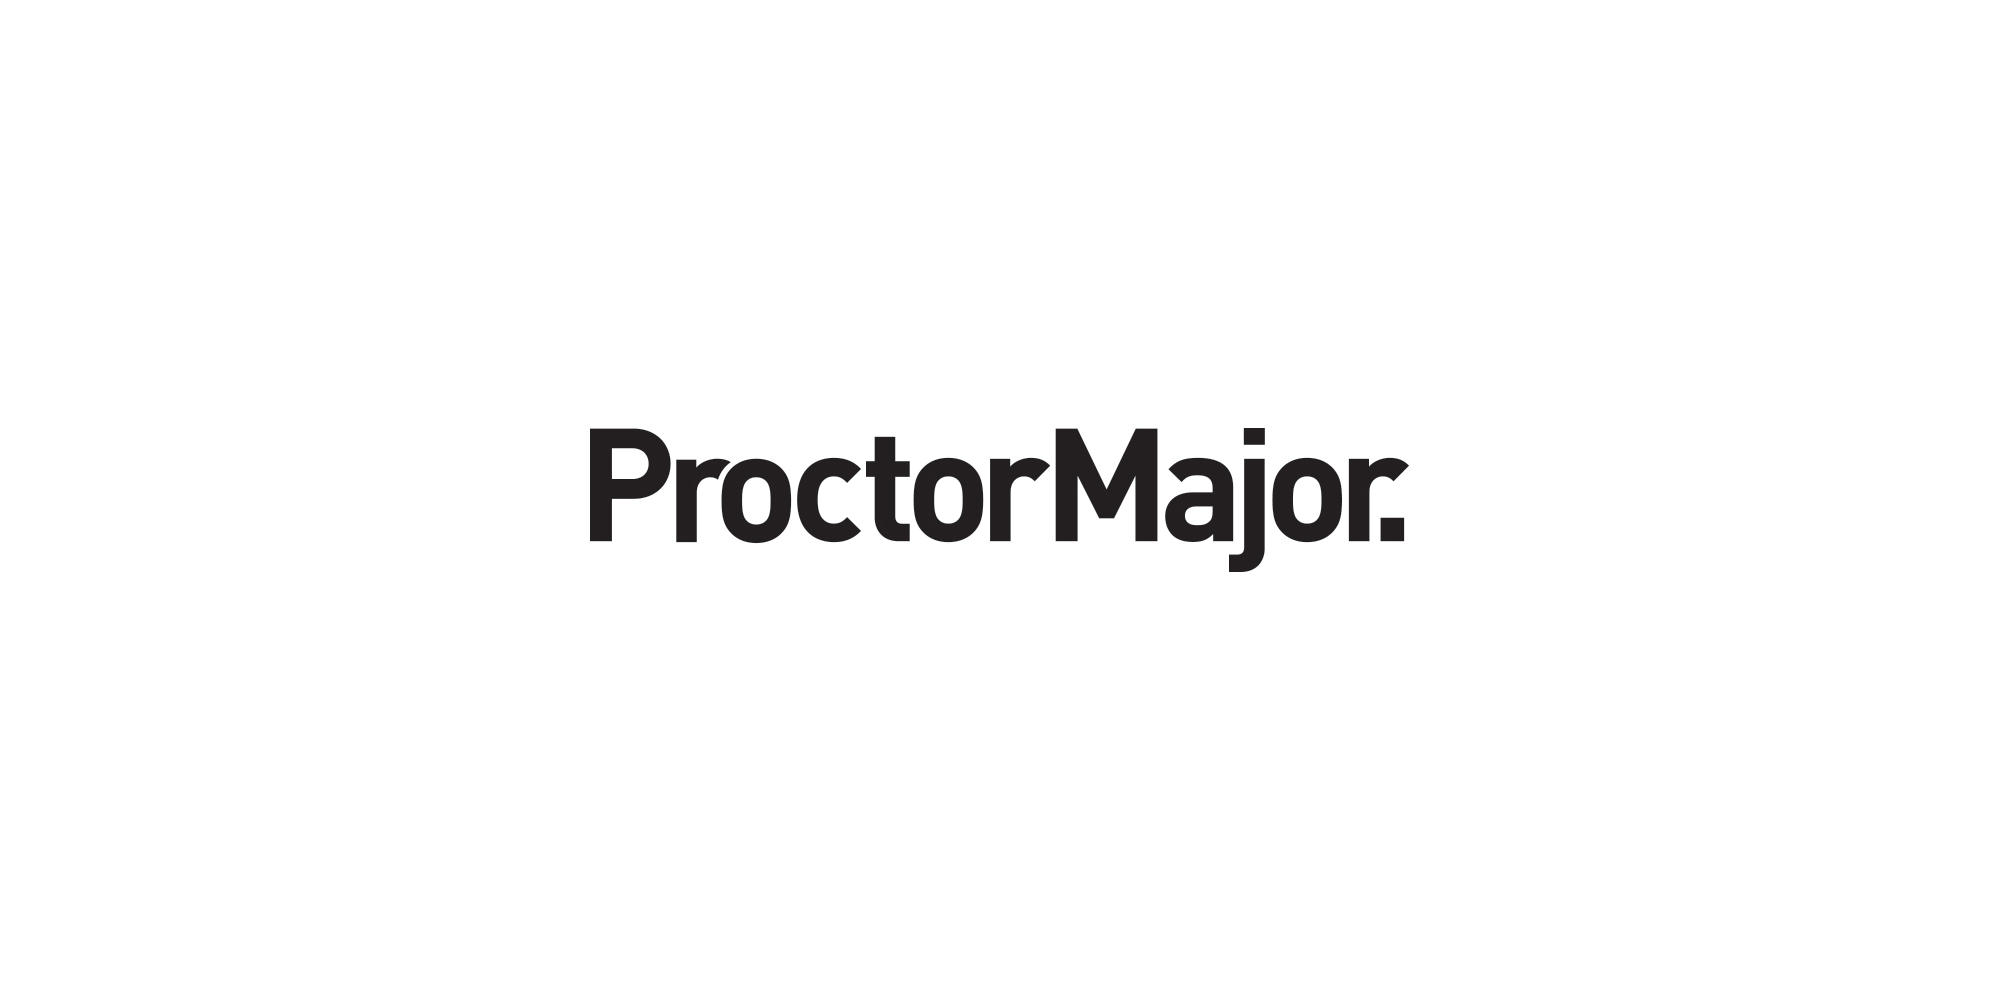 Proctor Major - Branding